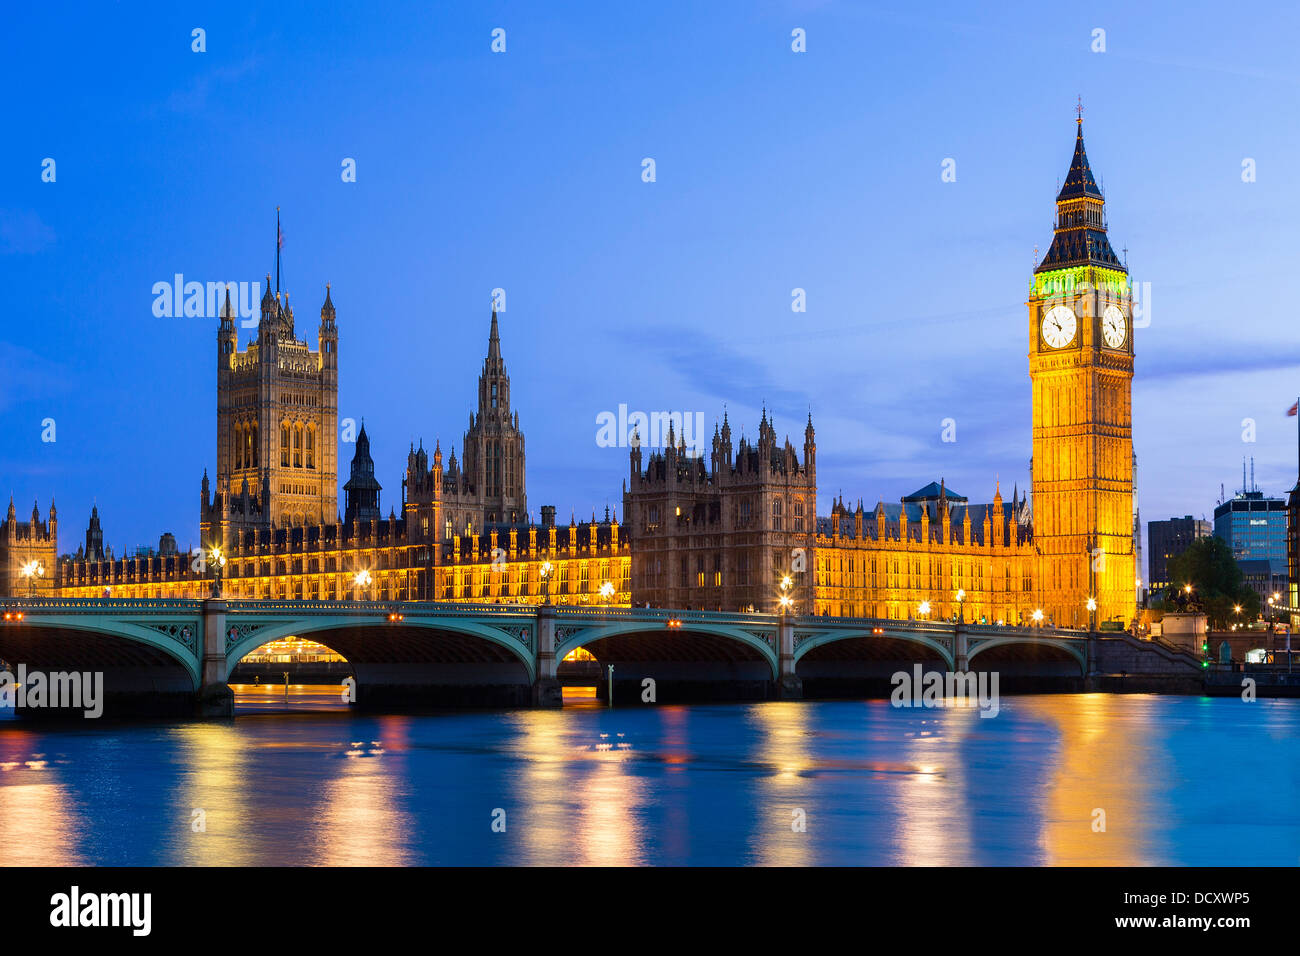 Londres, le parlement au crépuscule Banque D'Images